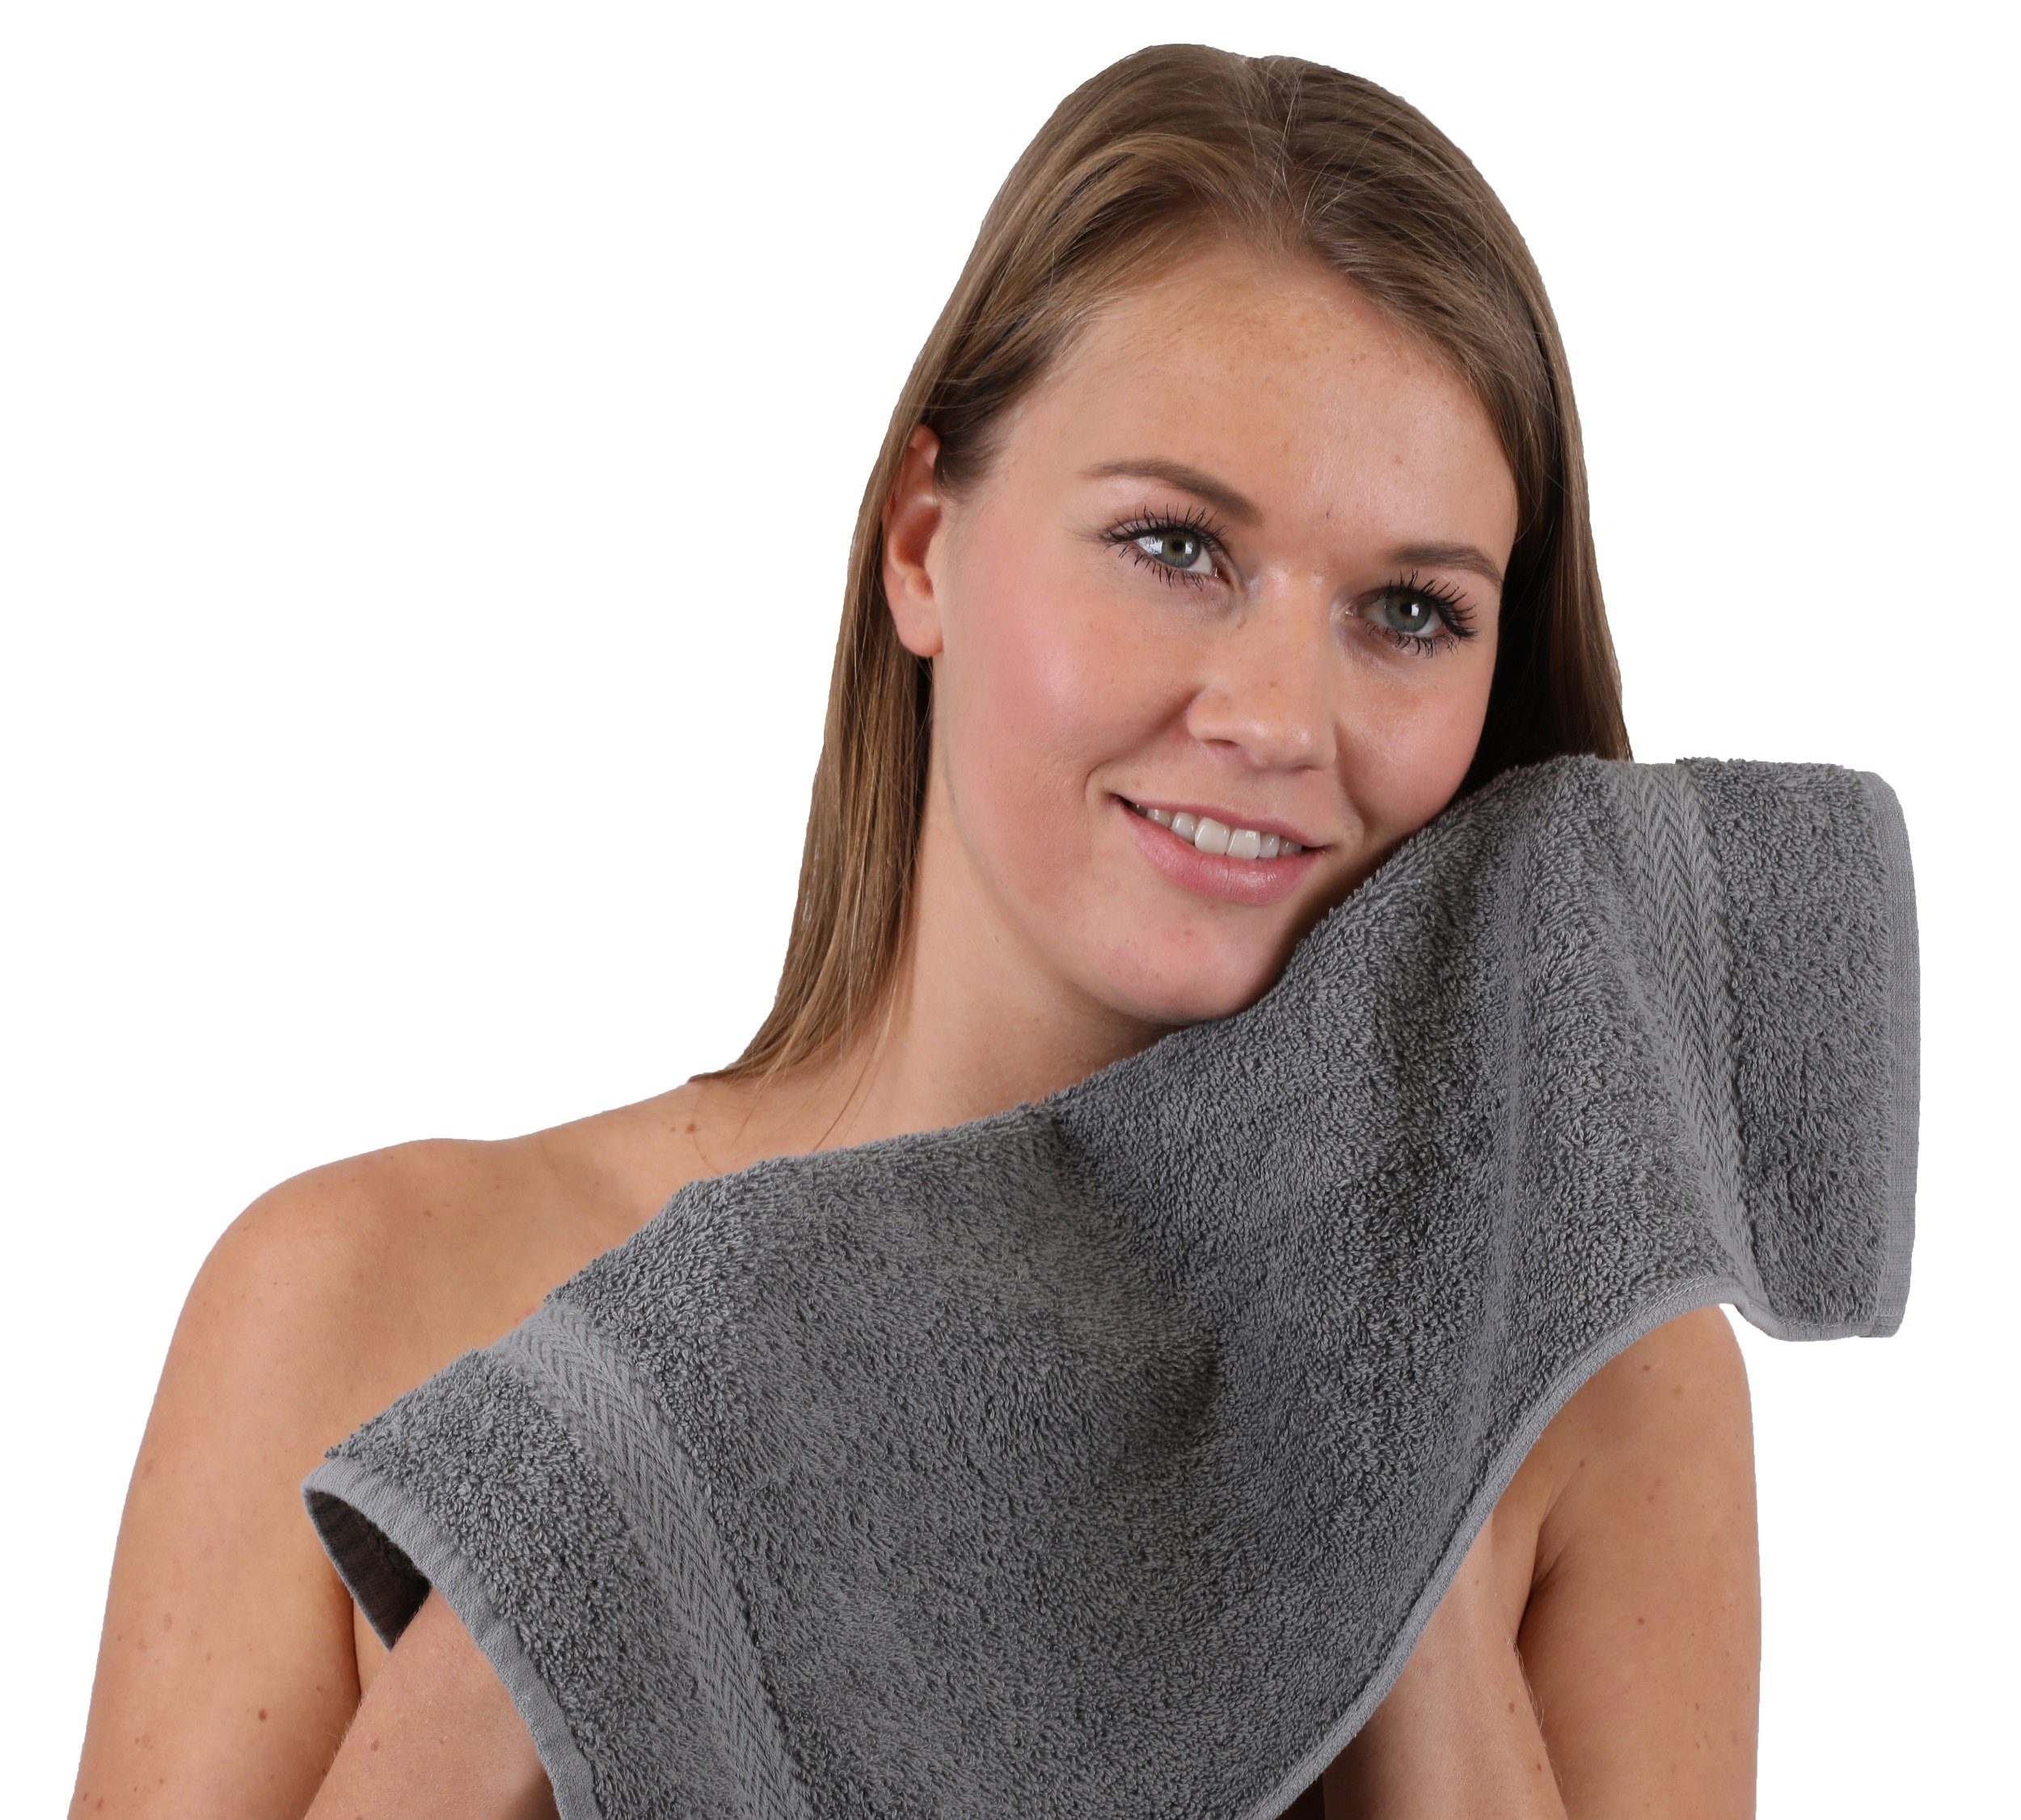 Betz Handtuch Set 10-TLG. Handtuch-Set nussbraun Farbe 100% und Baumwolle Classic anthrazit